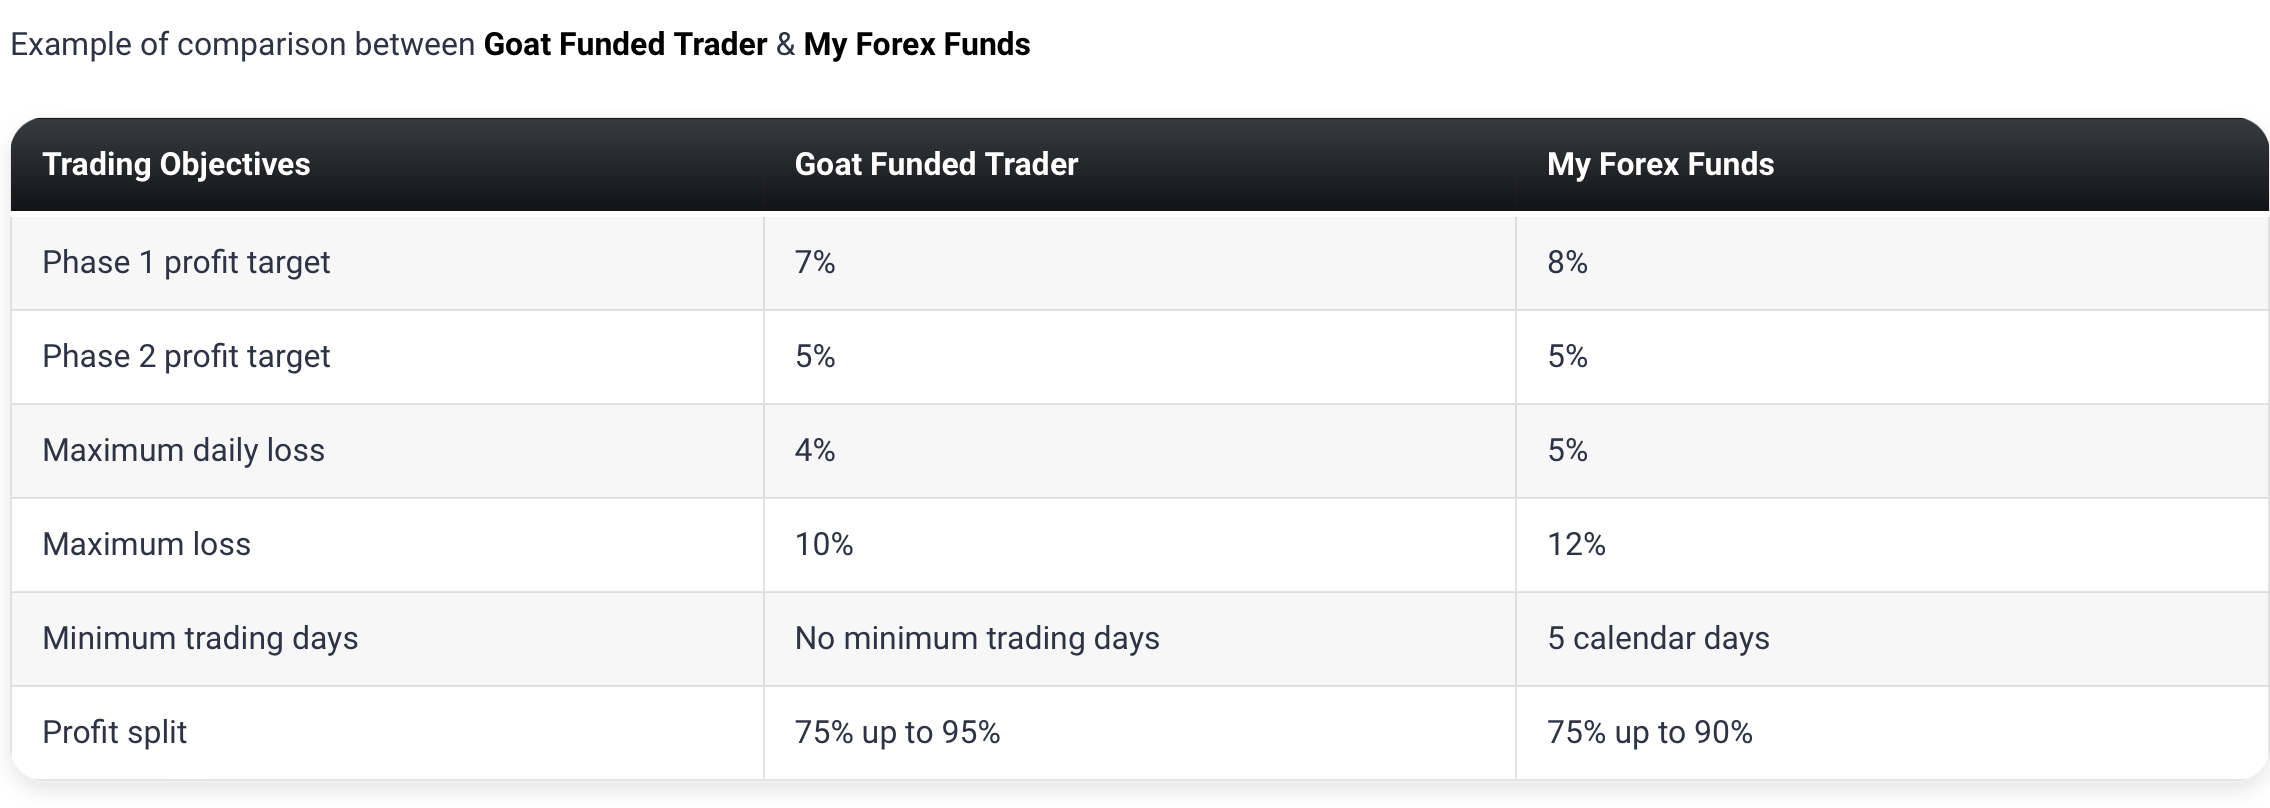 Goat Funded Trader9